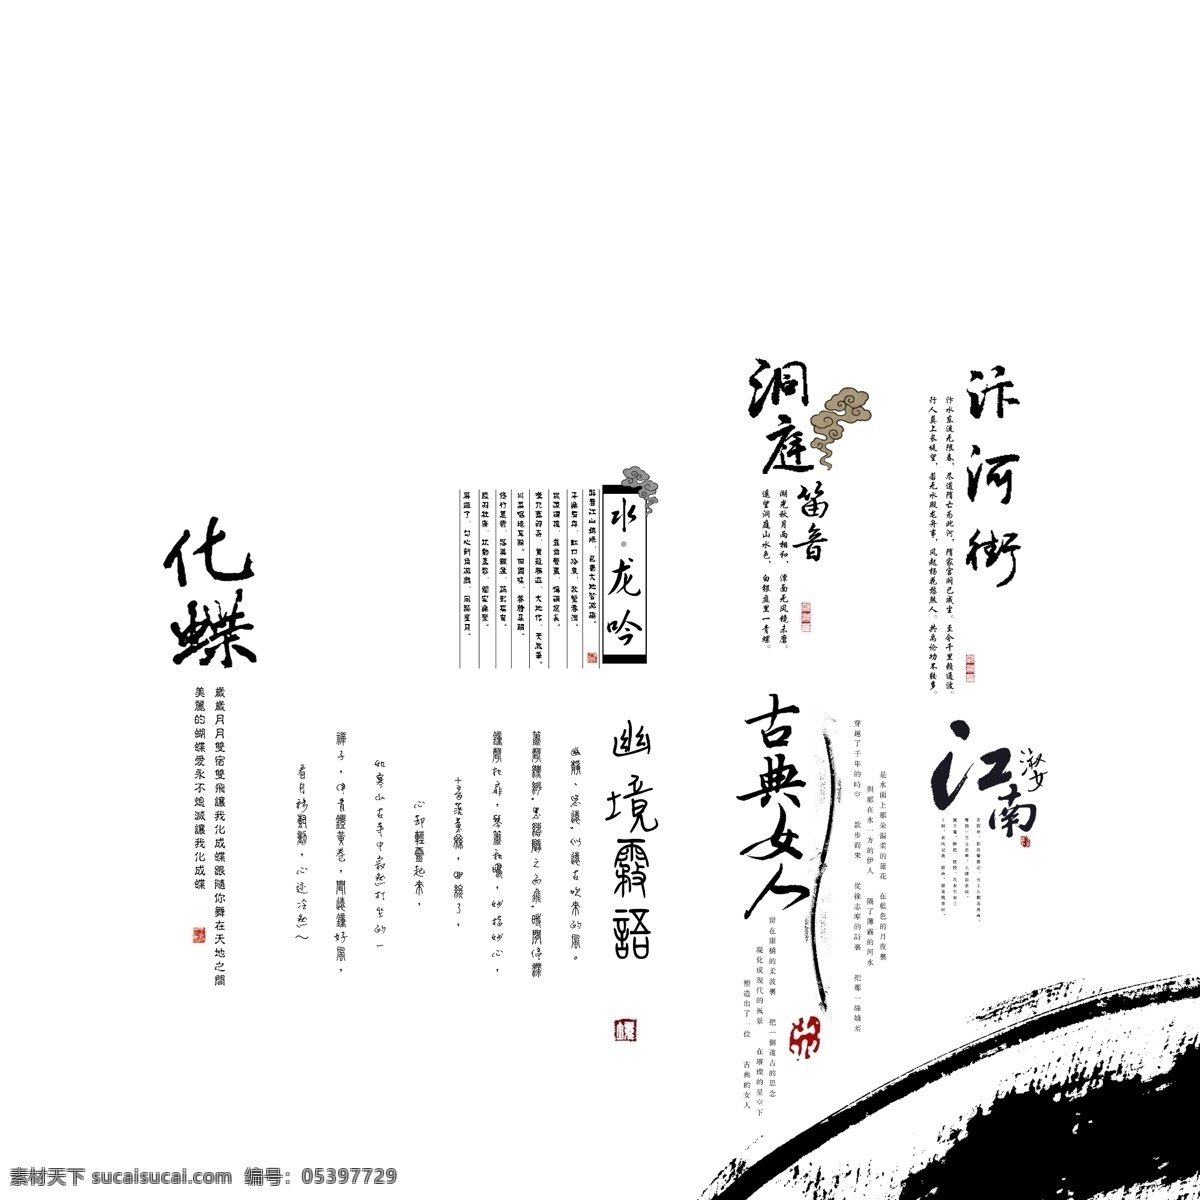 中国风字体 中国风 字体 水墨画 psd分层 艺术字体 字体下载 源文件